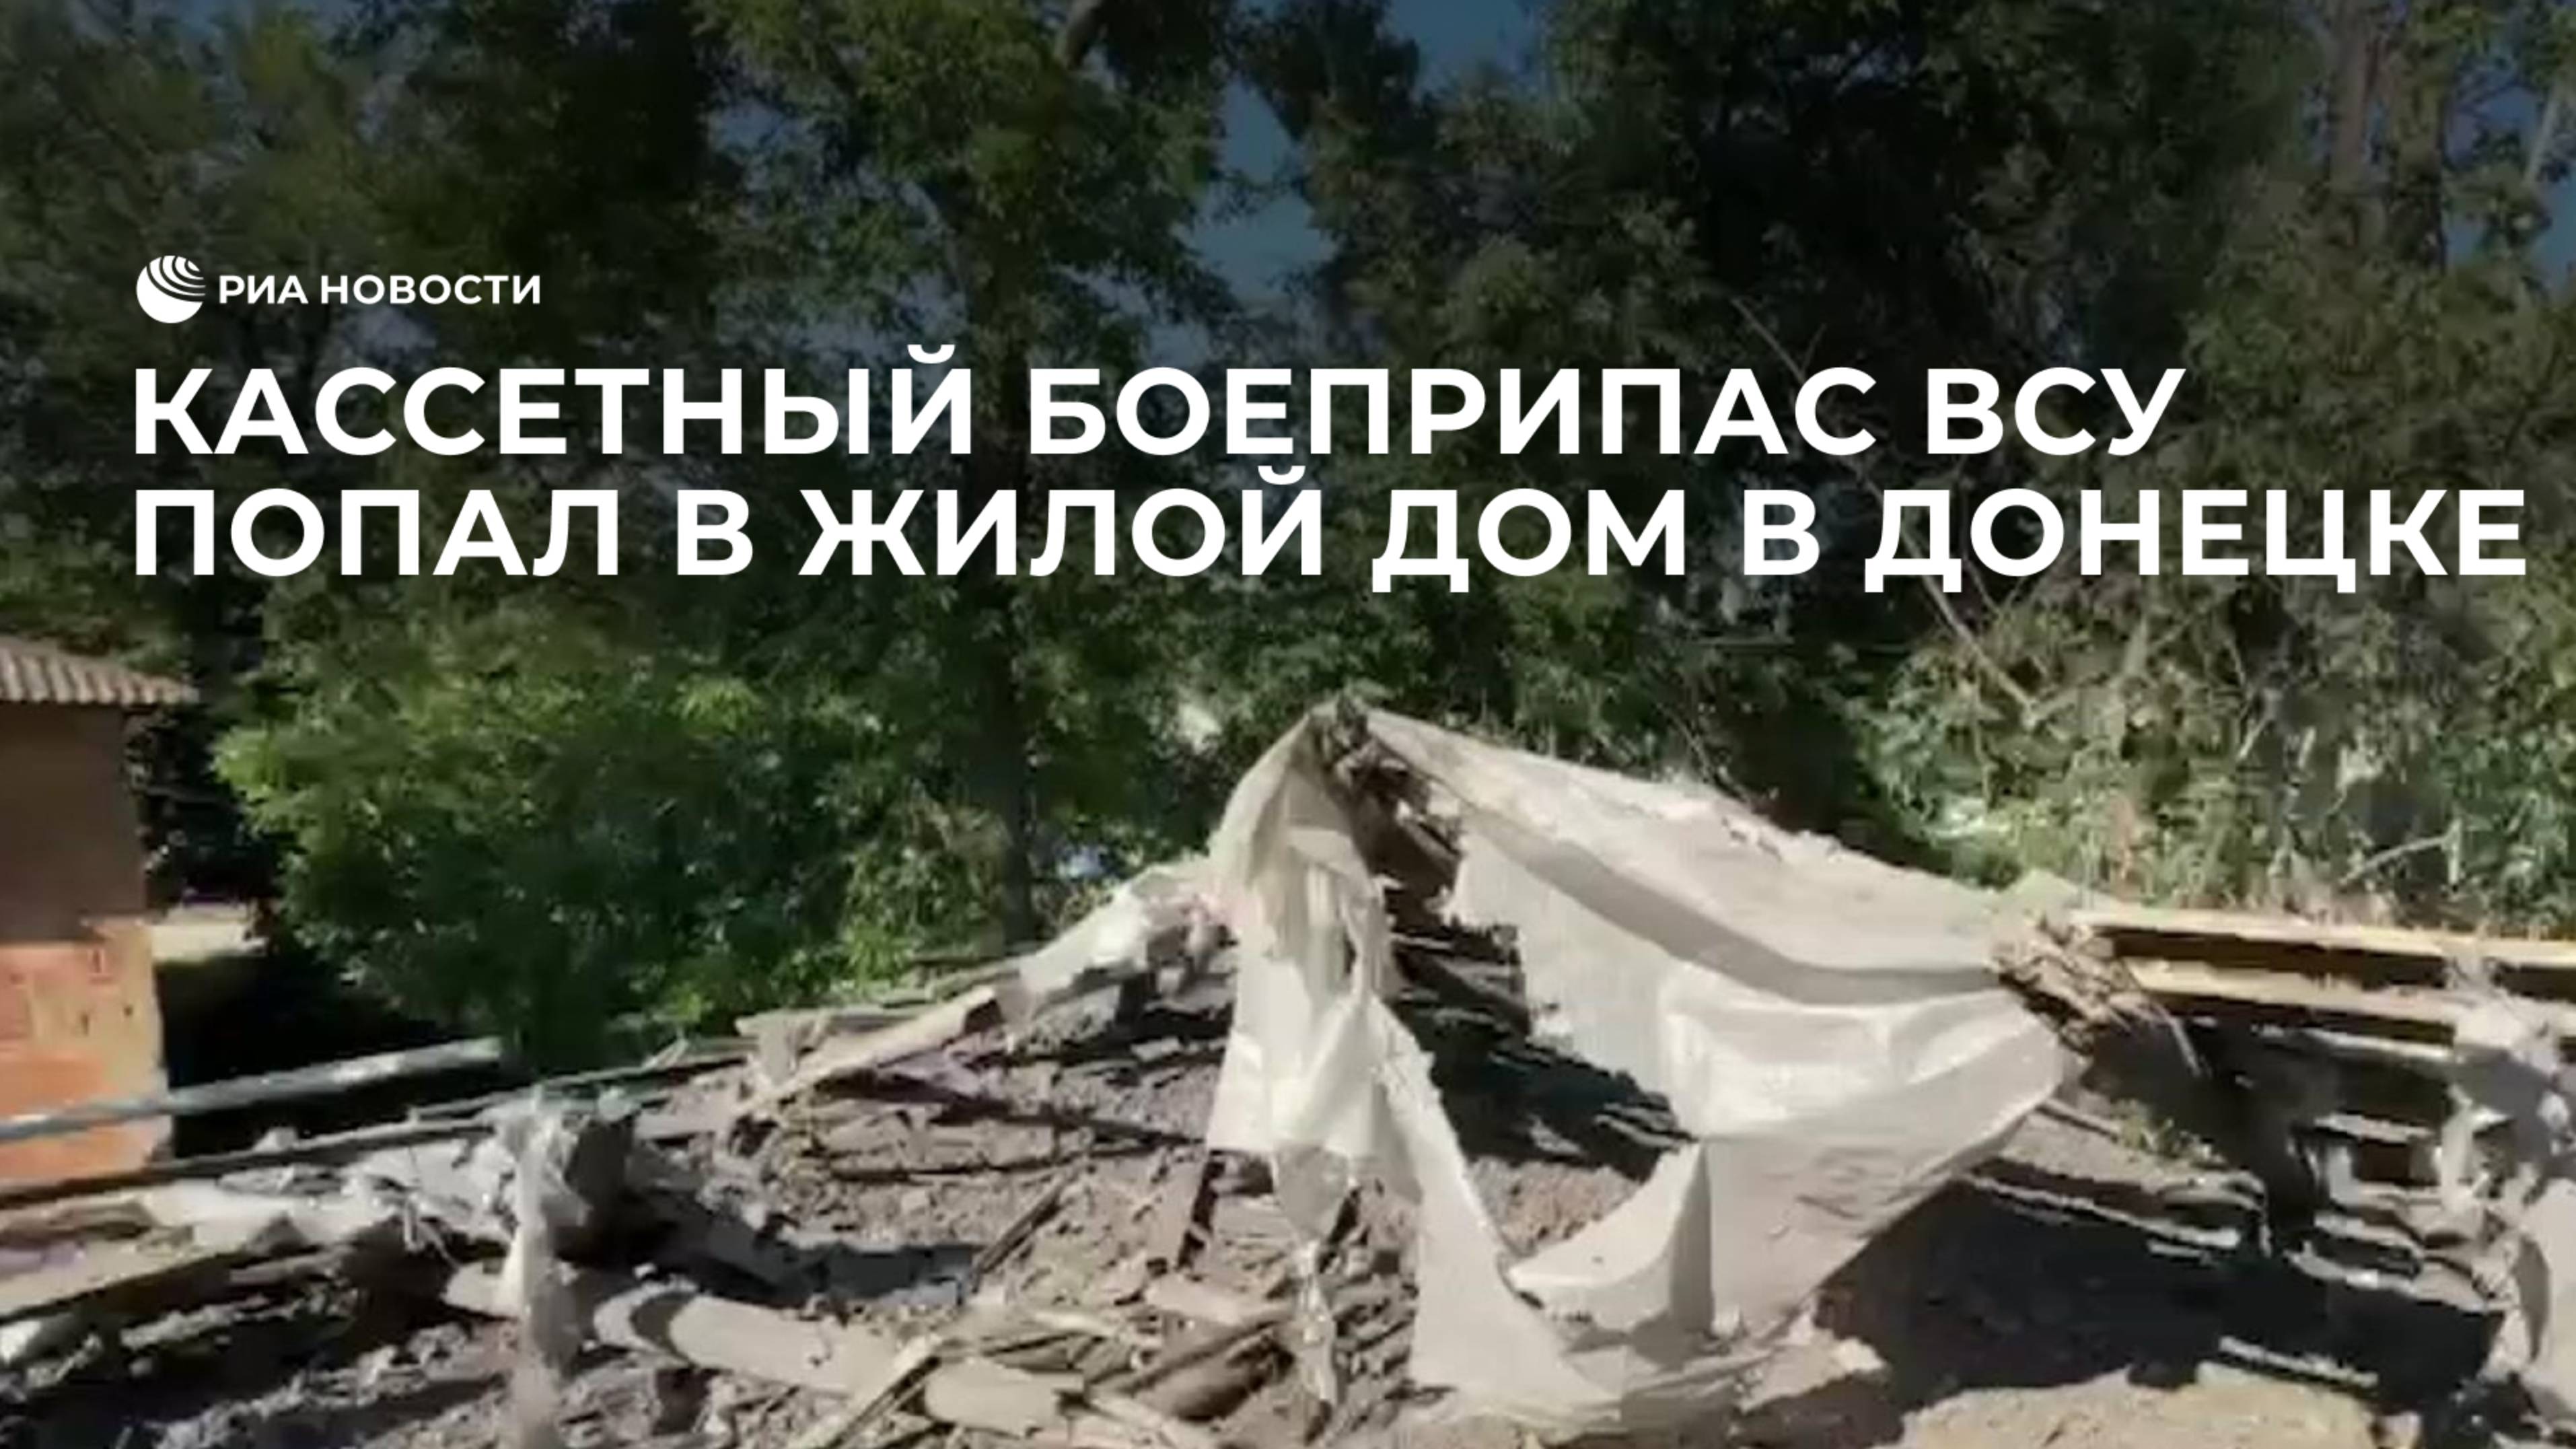 Кассетный боеприпас ВСУ попал в жилой дом в Донецке